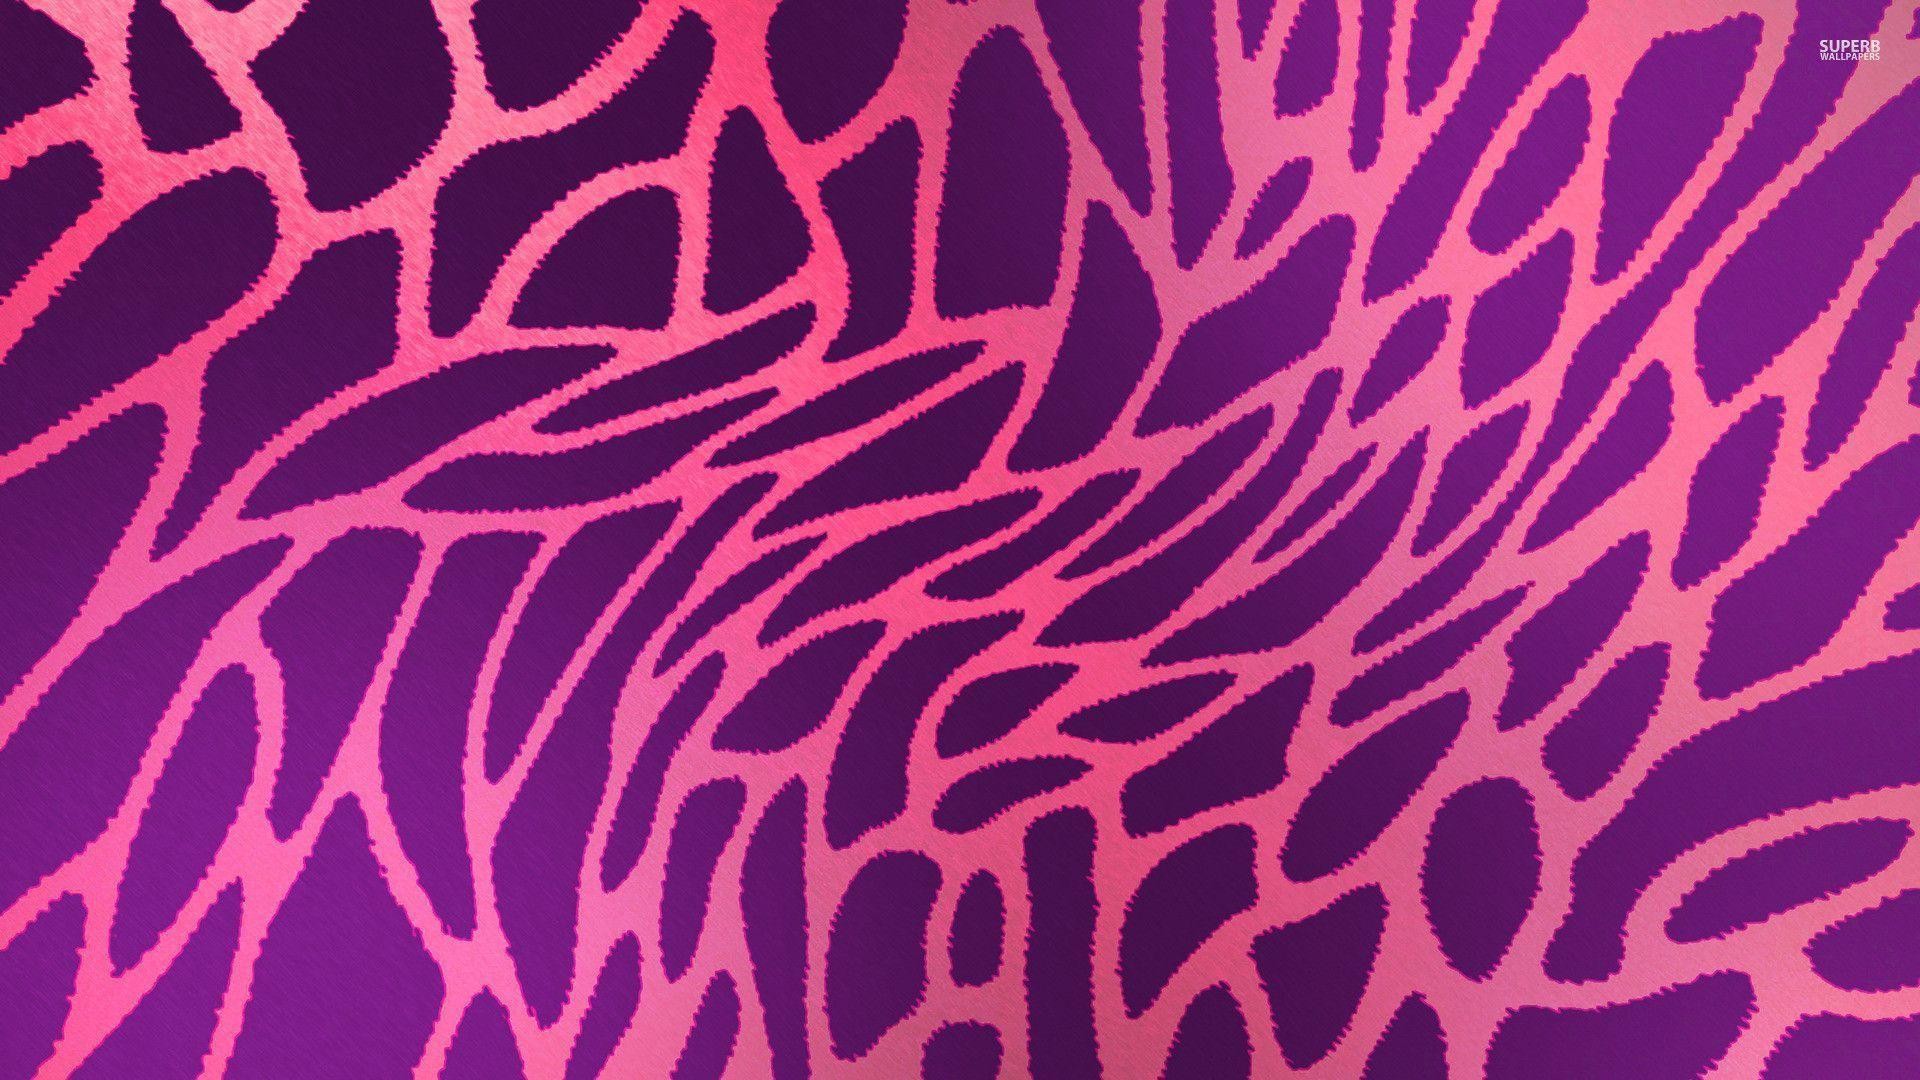 1920x1080 Pink fluffy fur iPhone wallpaper | iPhone | Pinterest | Follow me .